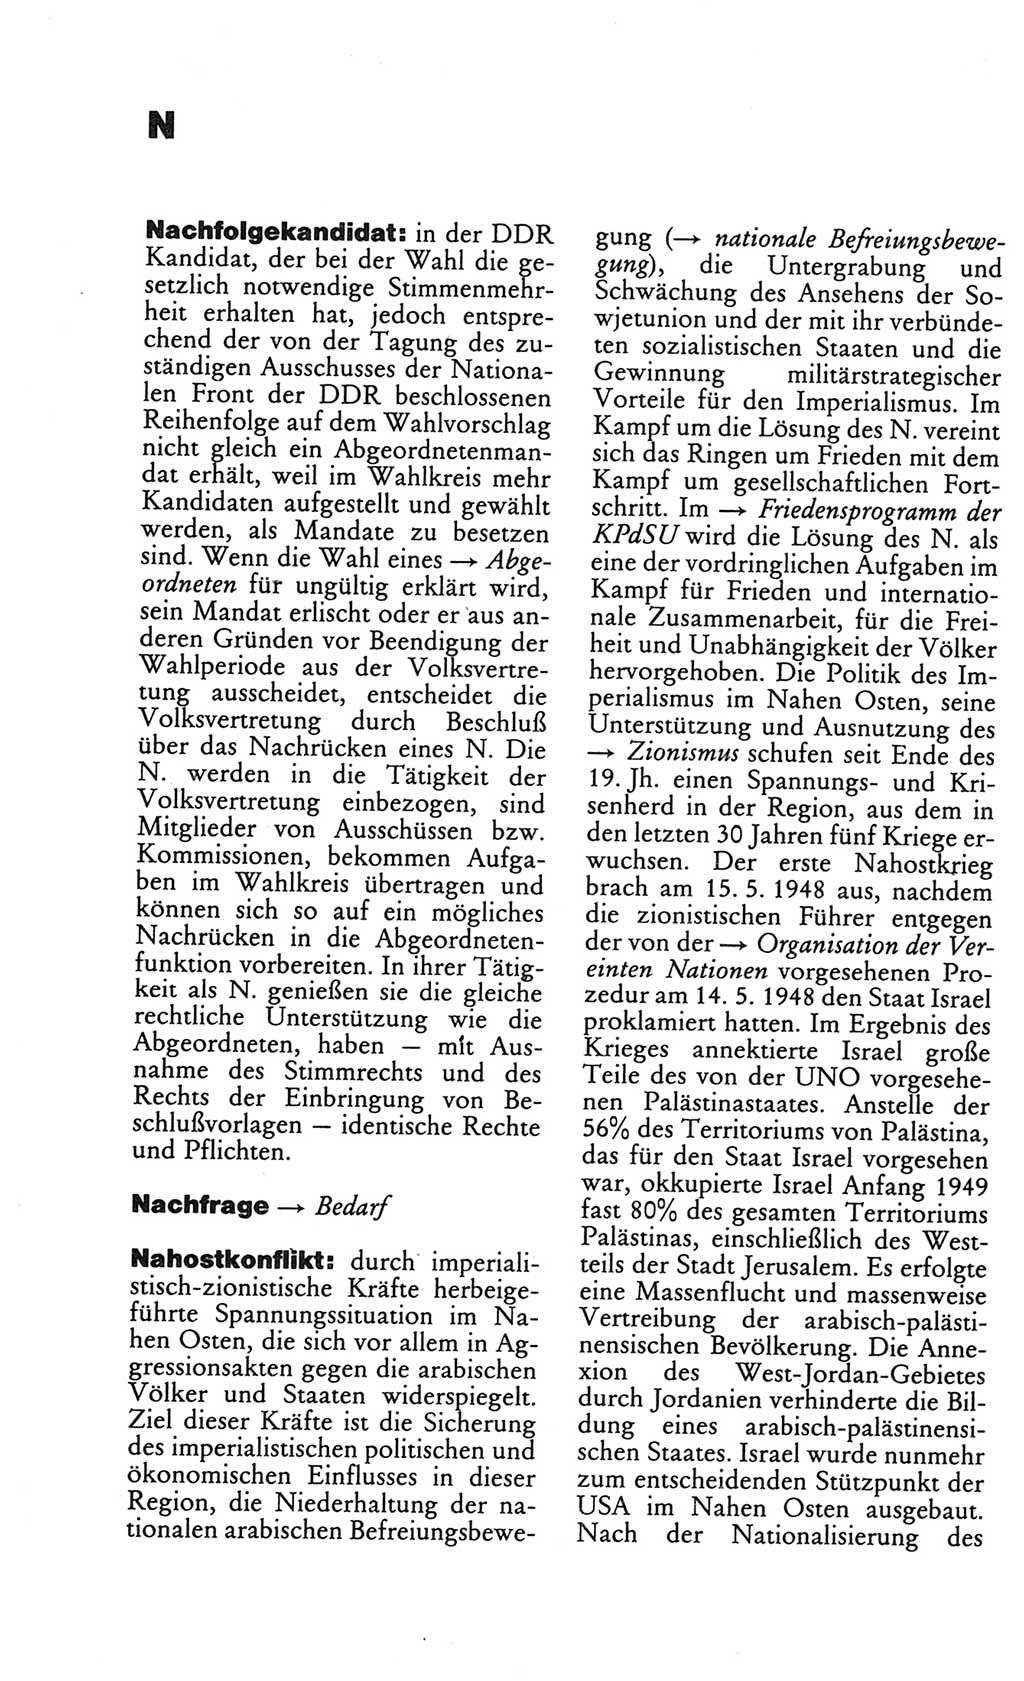 Kleines politisches Wörterbuch [Deutsche Demokratische Republik (DDR)] 1986, Seite 630 (Kl. pol. Wb. DDR 1986, S. 630)